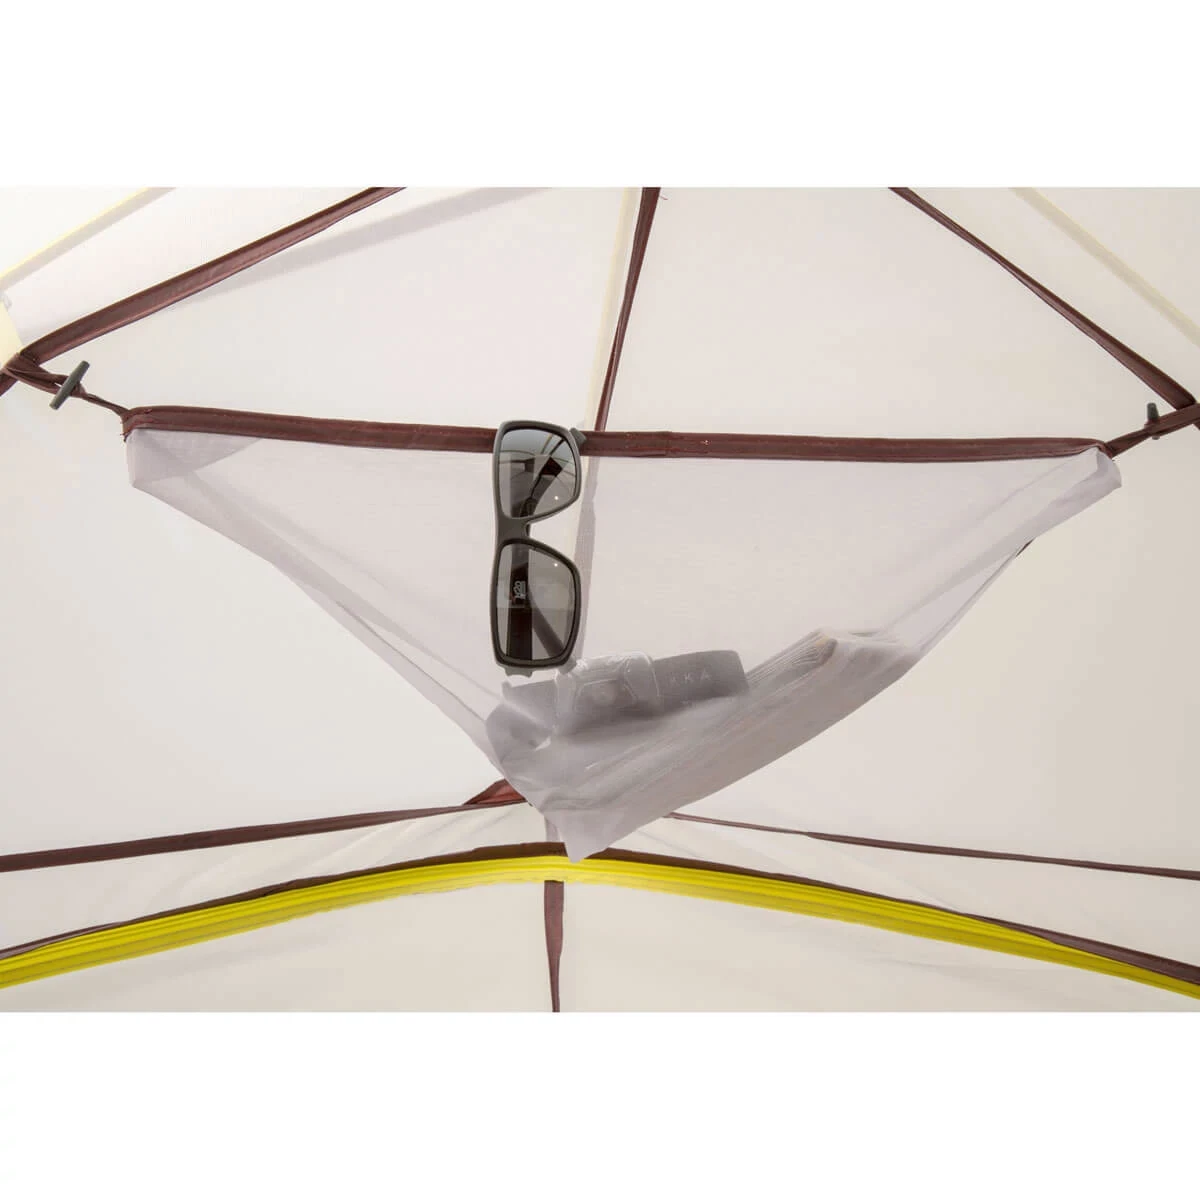 Summer Pass 3 tent gear loft